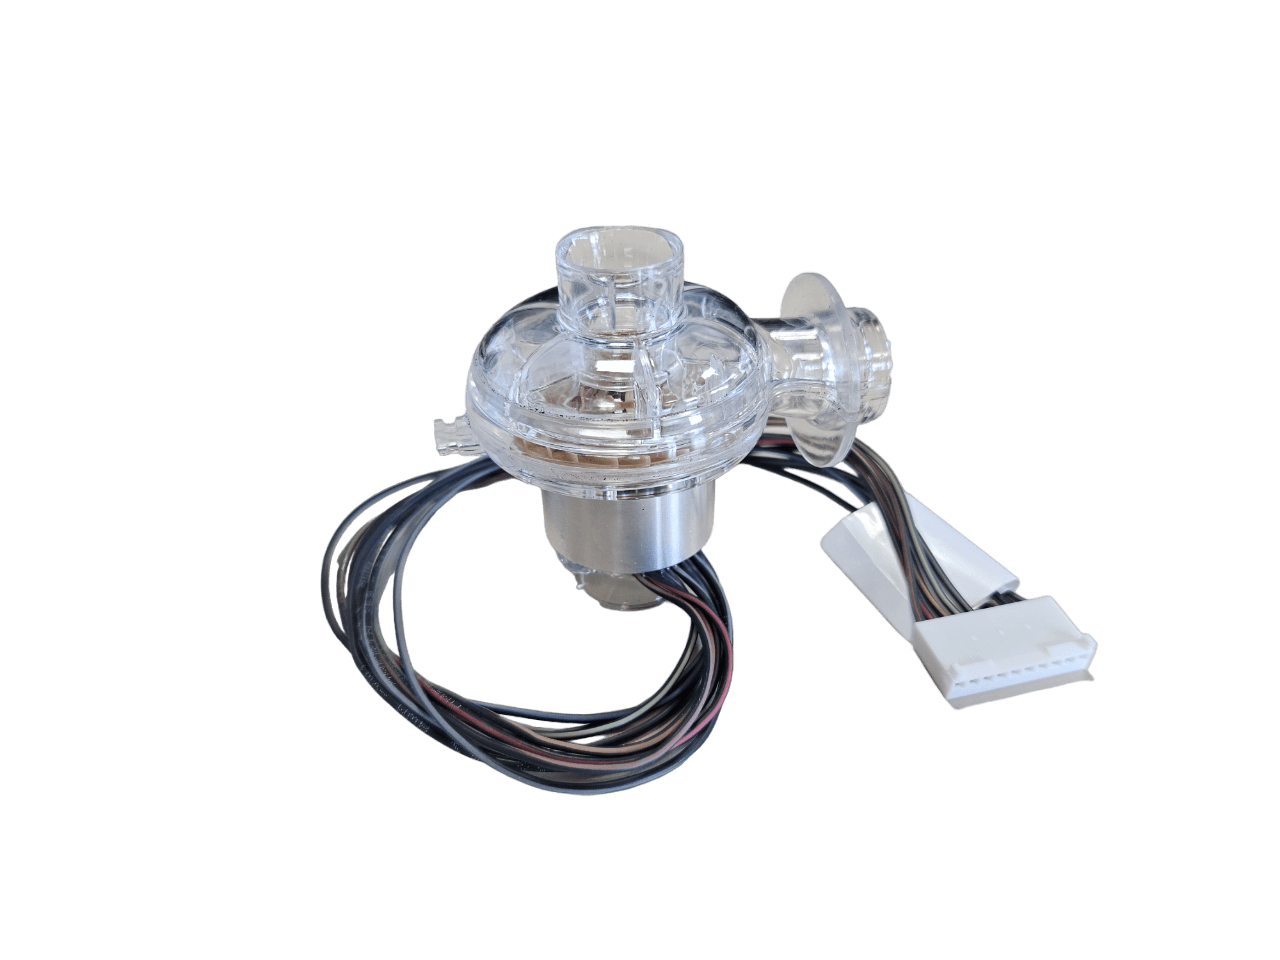 Product MFA0205 - Centrifugal Turbine for Ventilator image